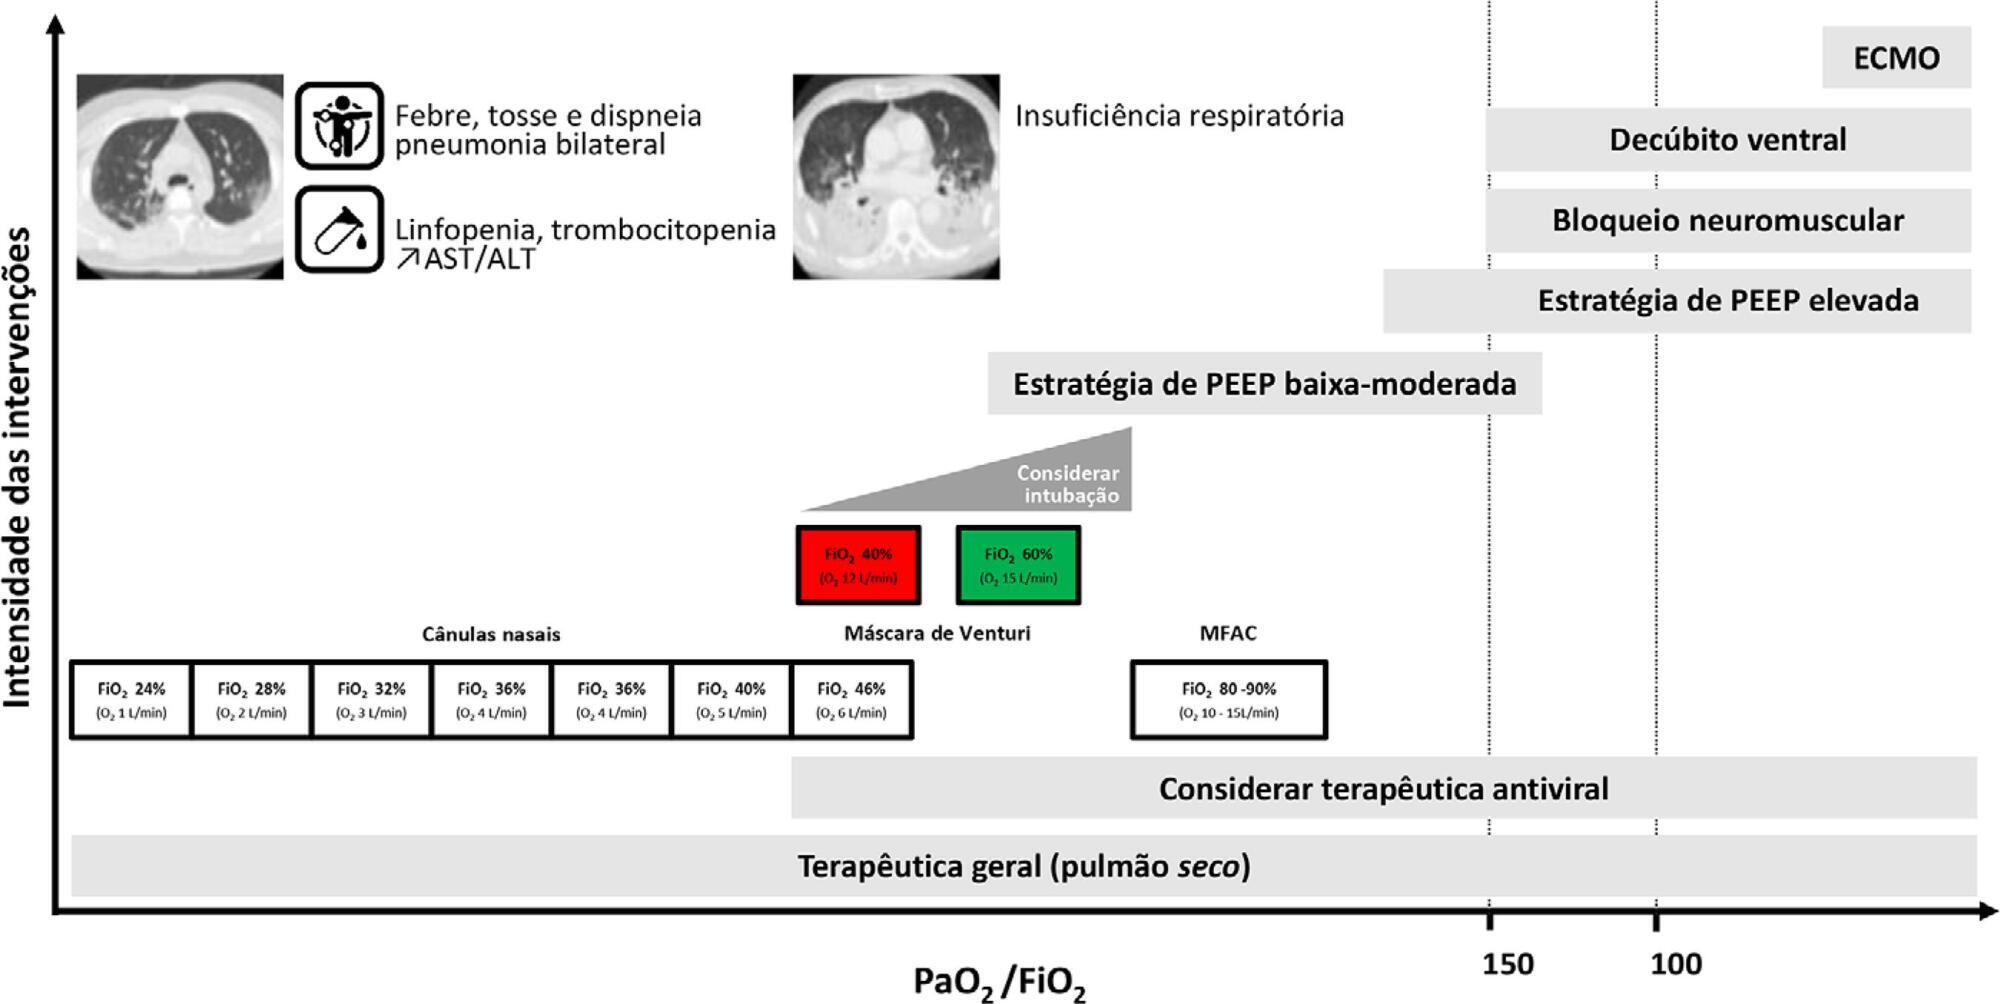 Recomendações da Sociedade Portuguesa de Cuidados Intensivos e Grupo de Infeção e Sépsis para a abordagem do COVID-19 em medicina intensiva